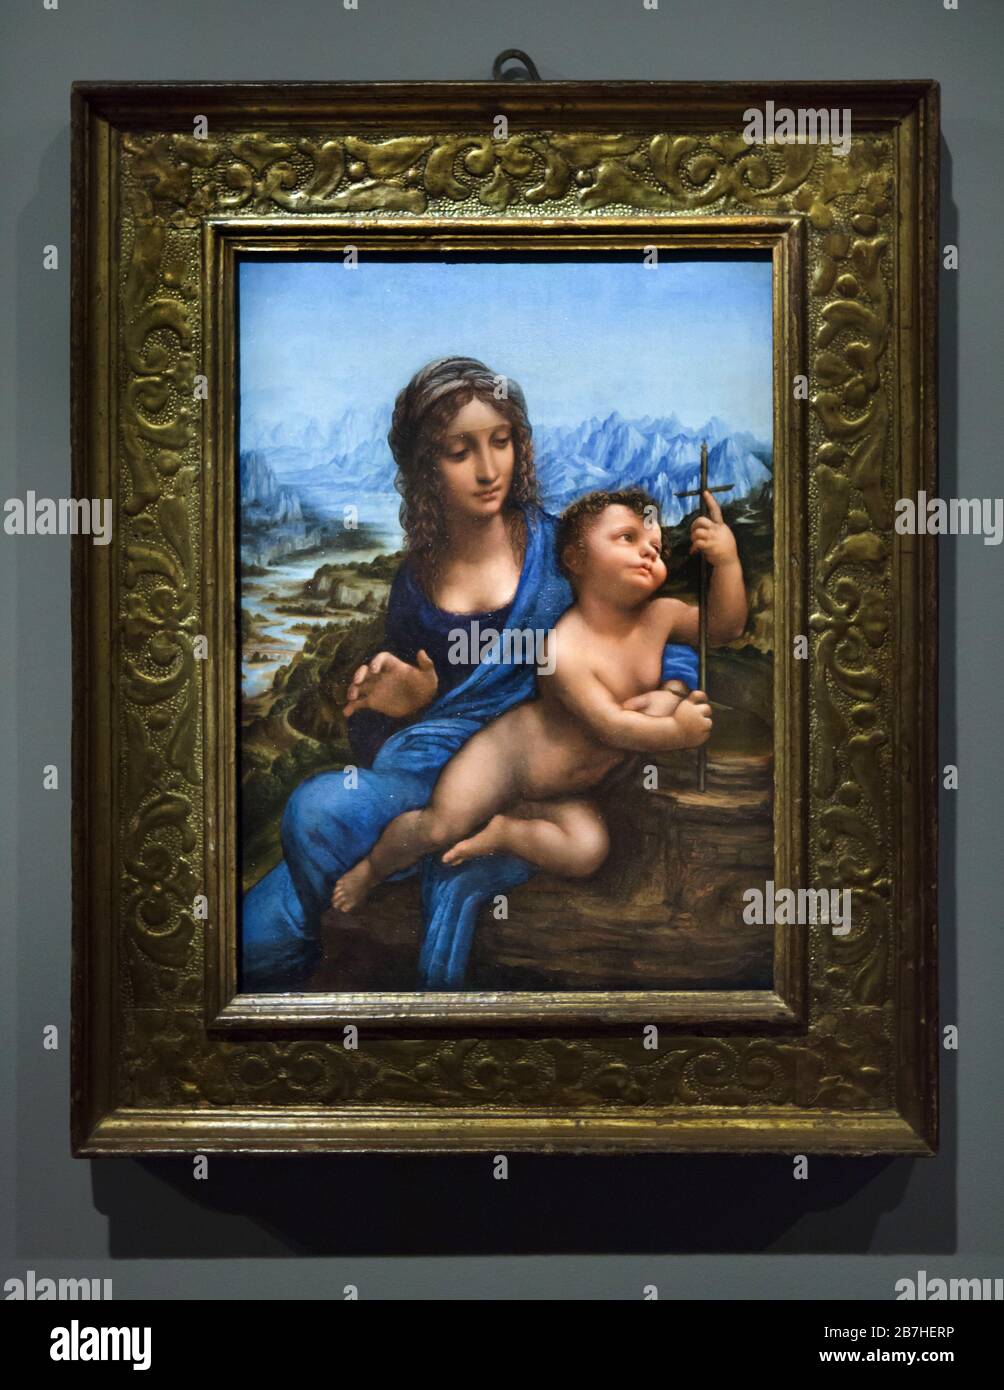 Gemälde "Landsdowne Madonna", auch bekannt als "Madonna des Yarnwinders" des italienischen Renaissance-Malers Leonardo da Vinci (1501-1510), ausgestellt auf seiner Ausstellung im Louvre in Paris, Frankreich. Die Ausstellung zum 500-jährigen Todestag Leonardos läuft bis zum 24. Februar 2020. Stockfoto